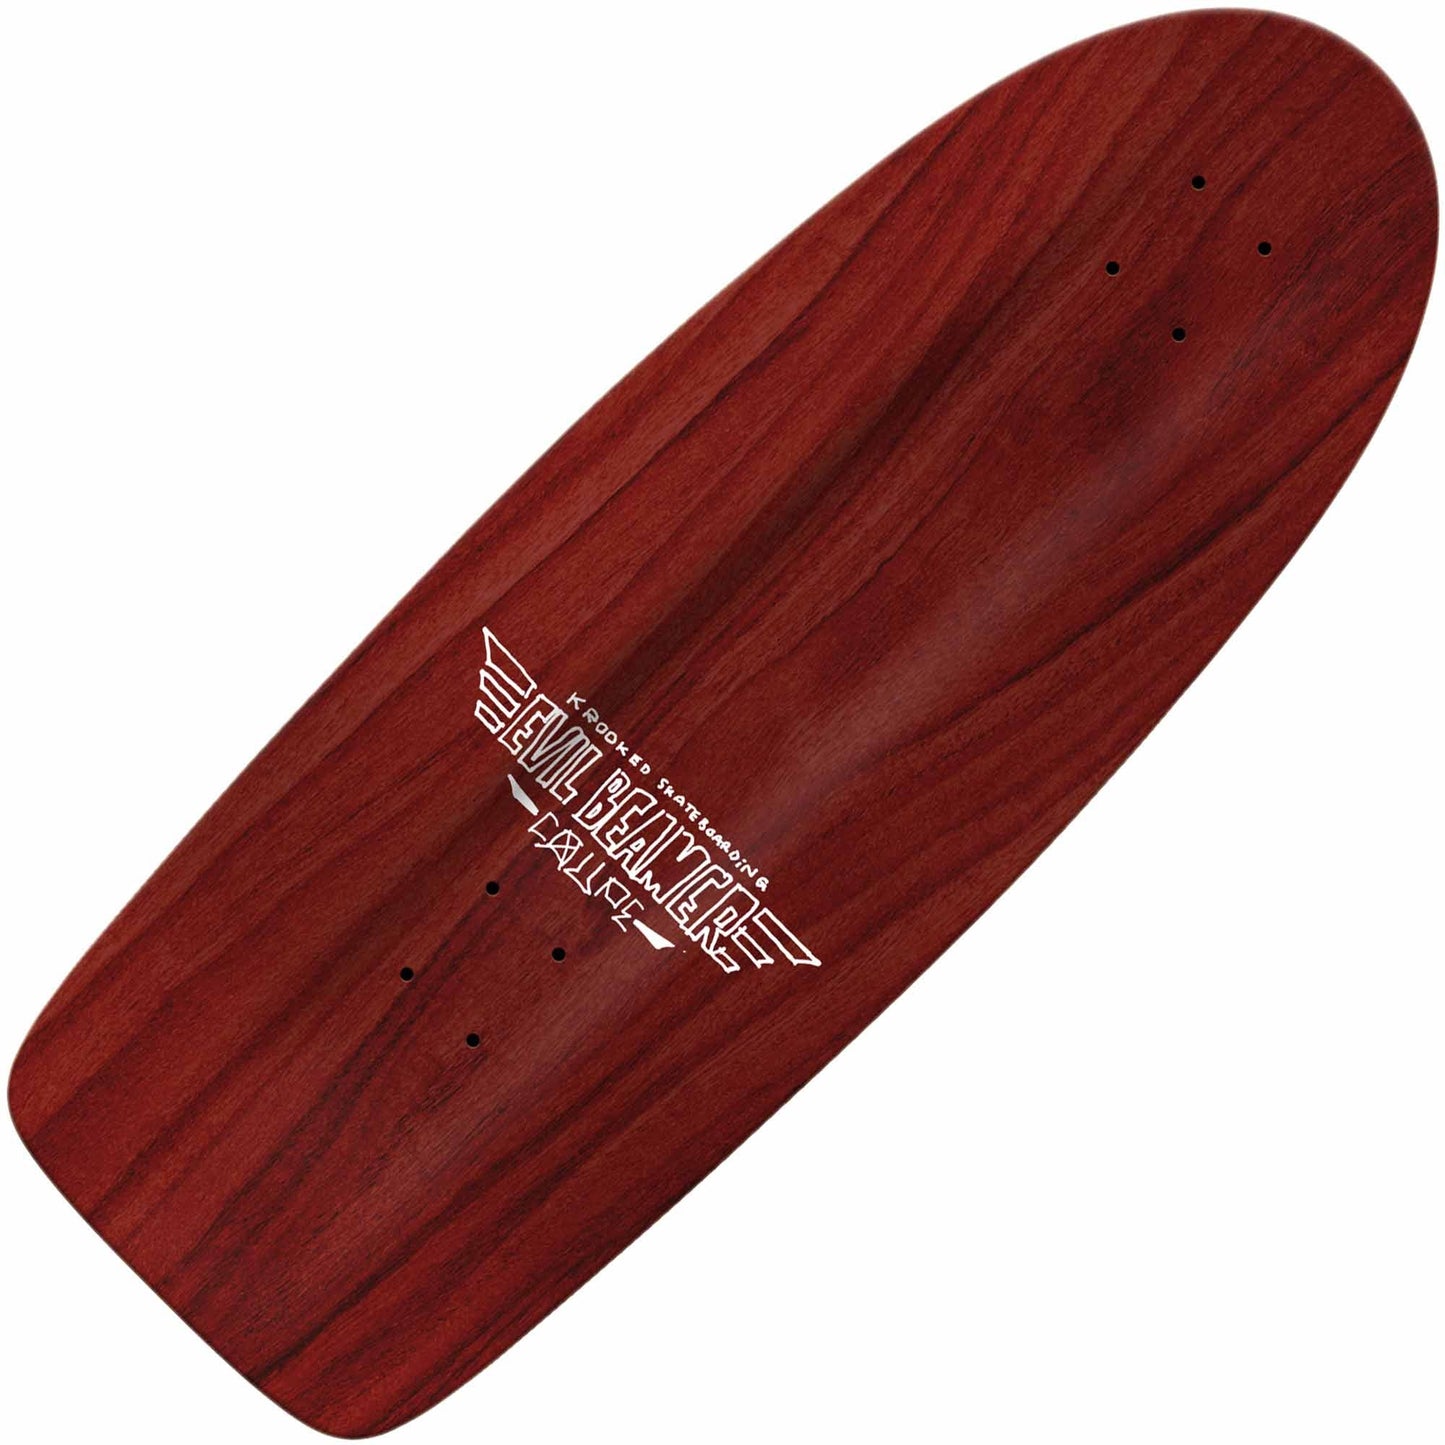 Krooked Evil Beamer Coupe Deck (10.75") - Tiki Room Skateboards - 2